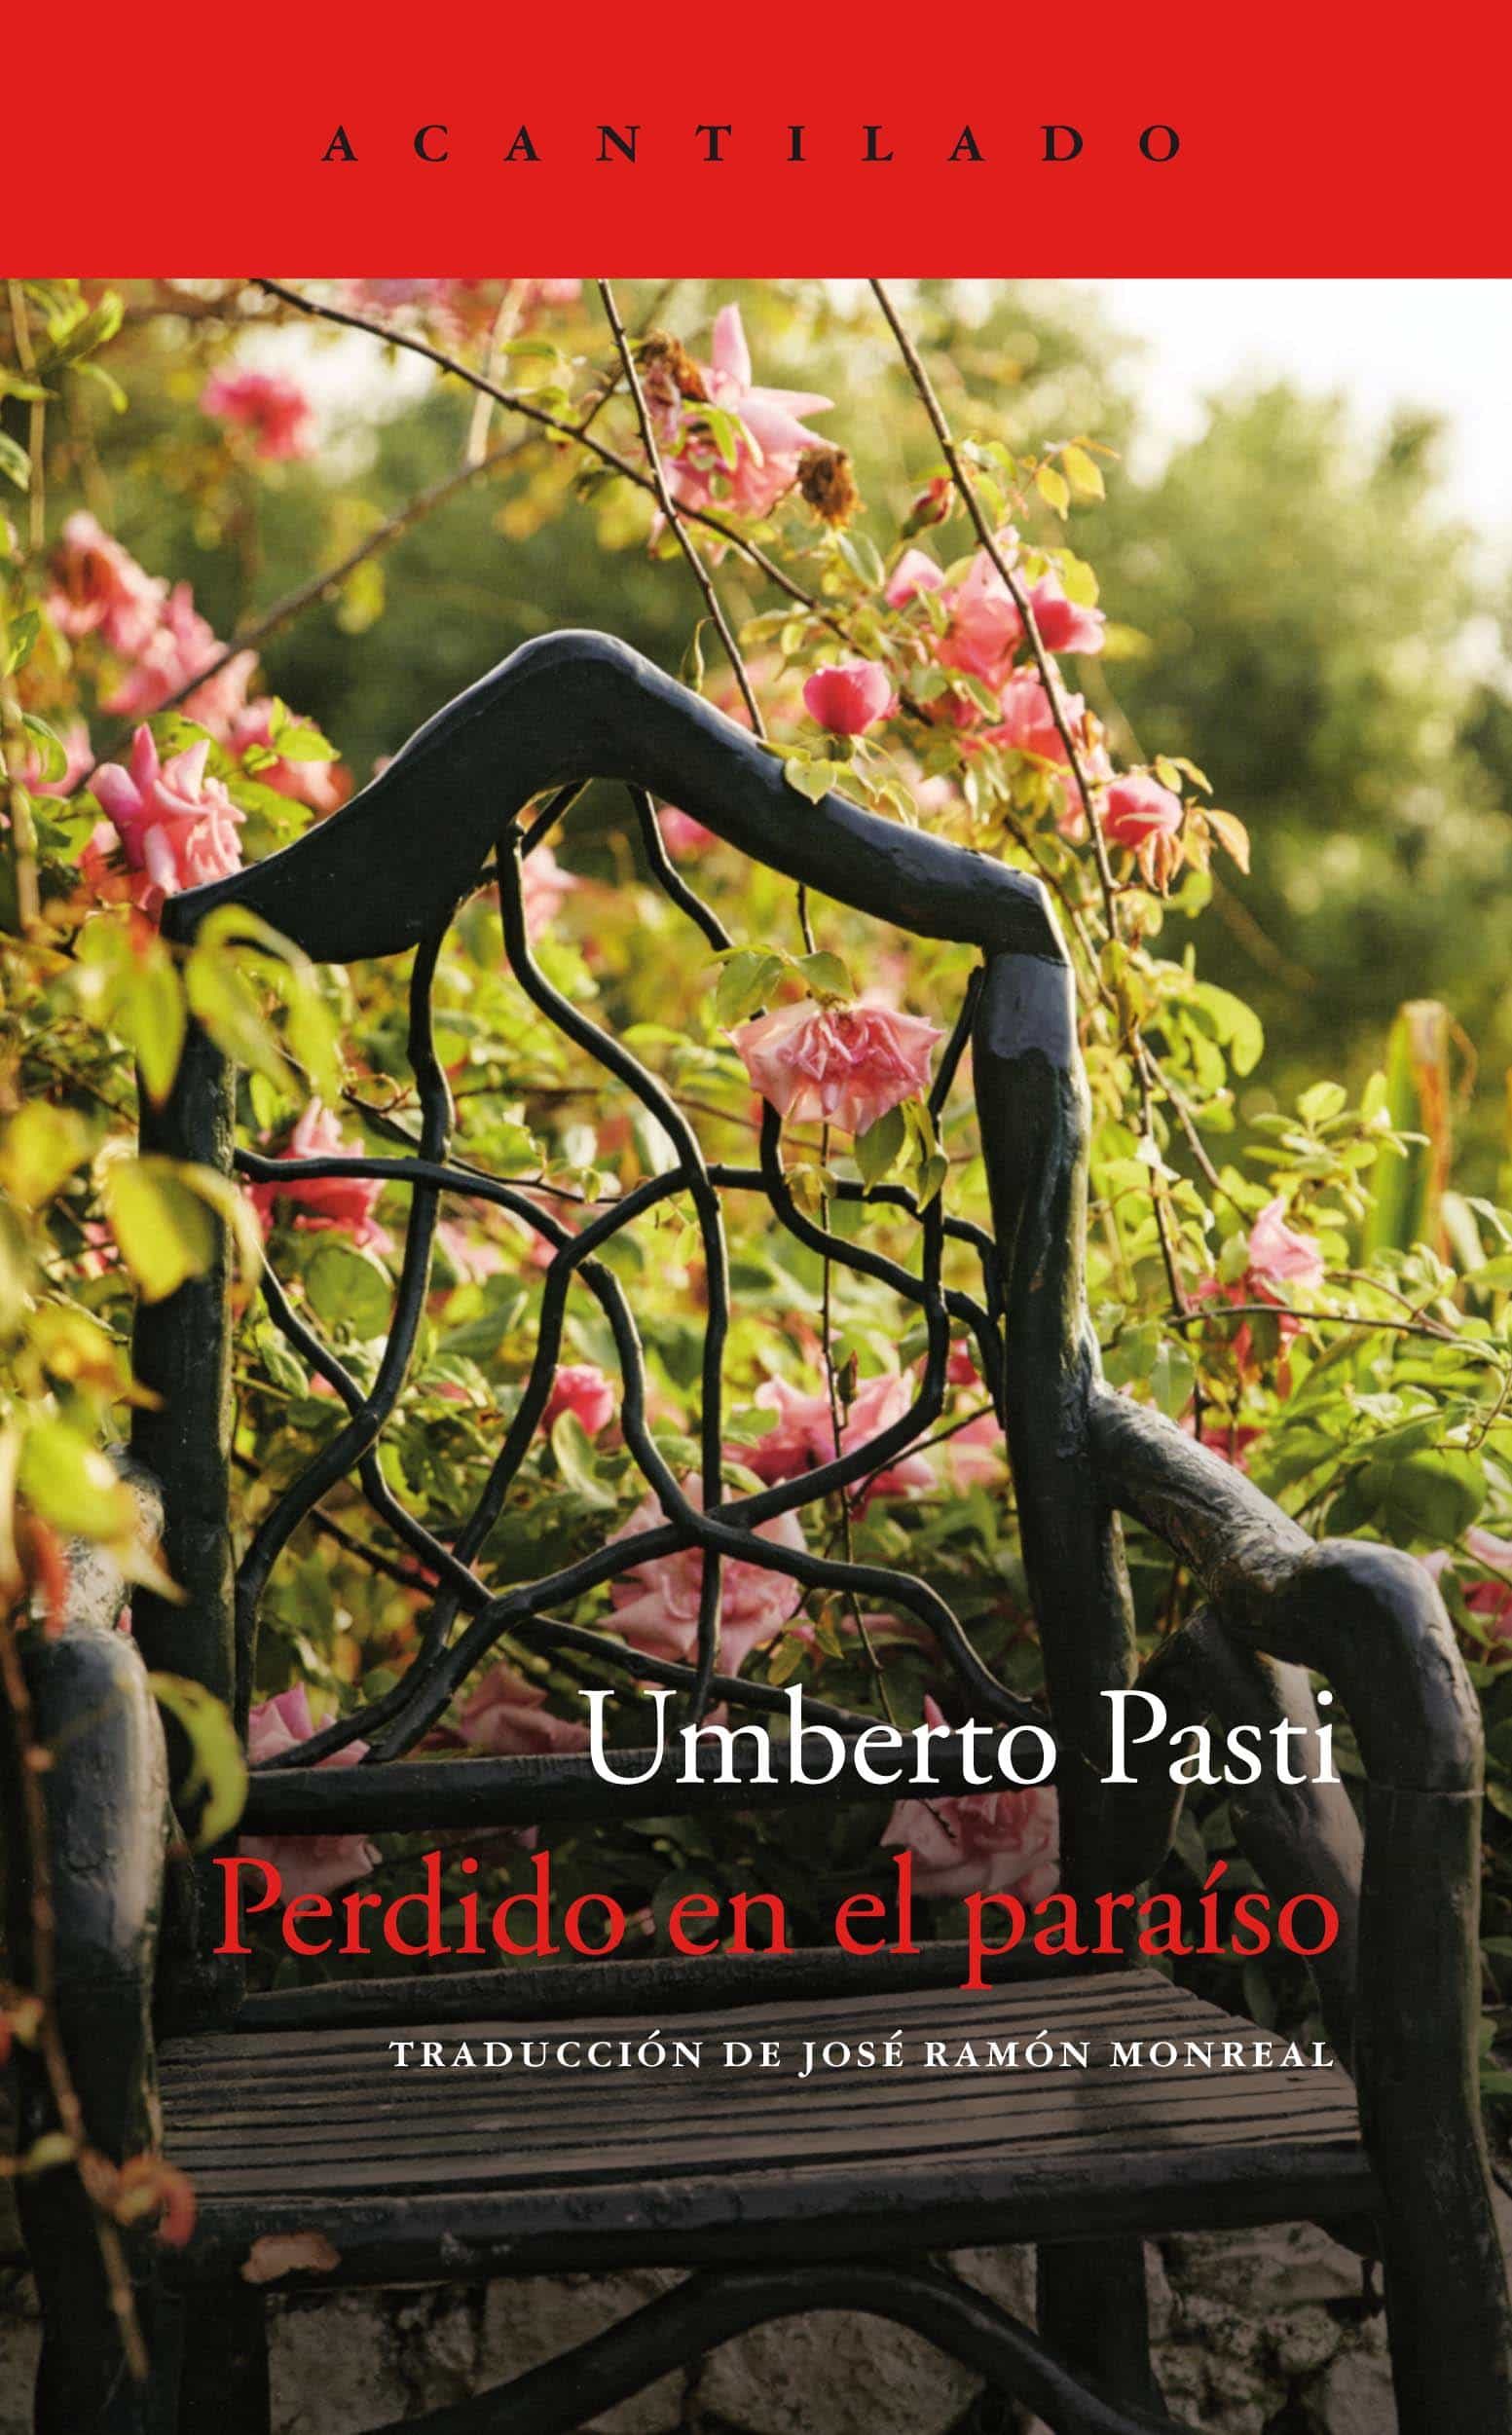 Perdido en el paraíso, de Umberto Pasti